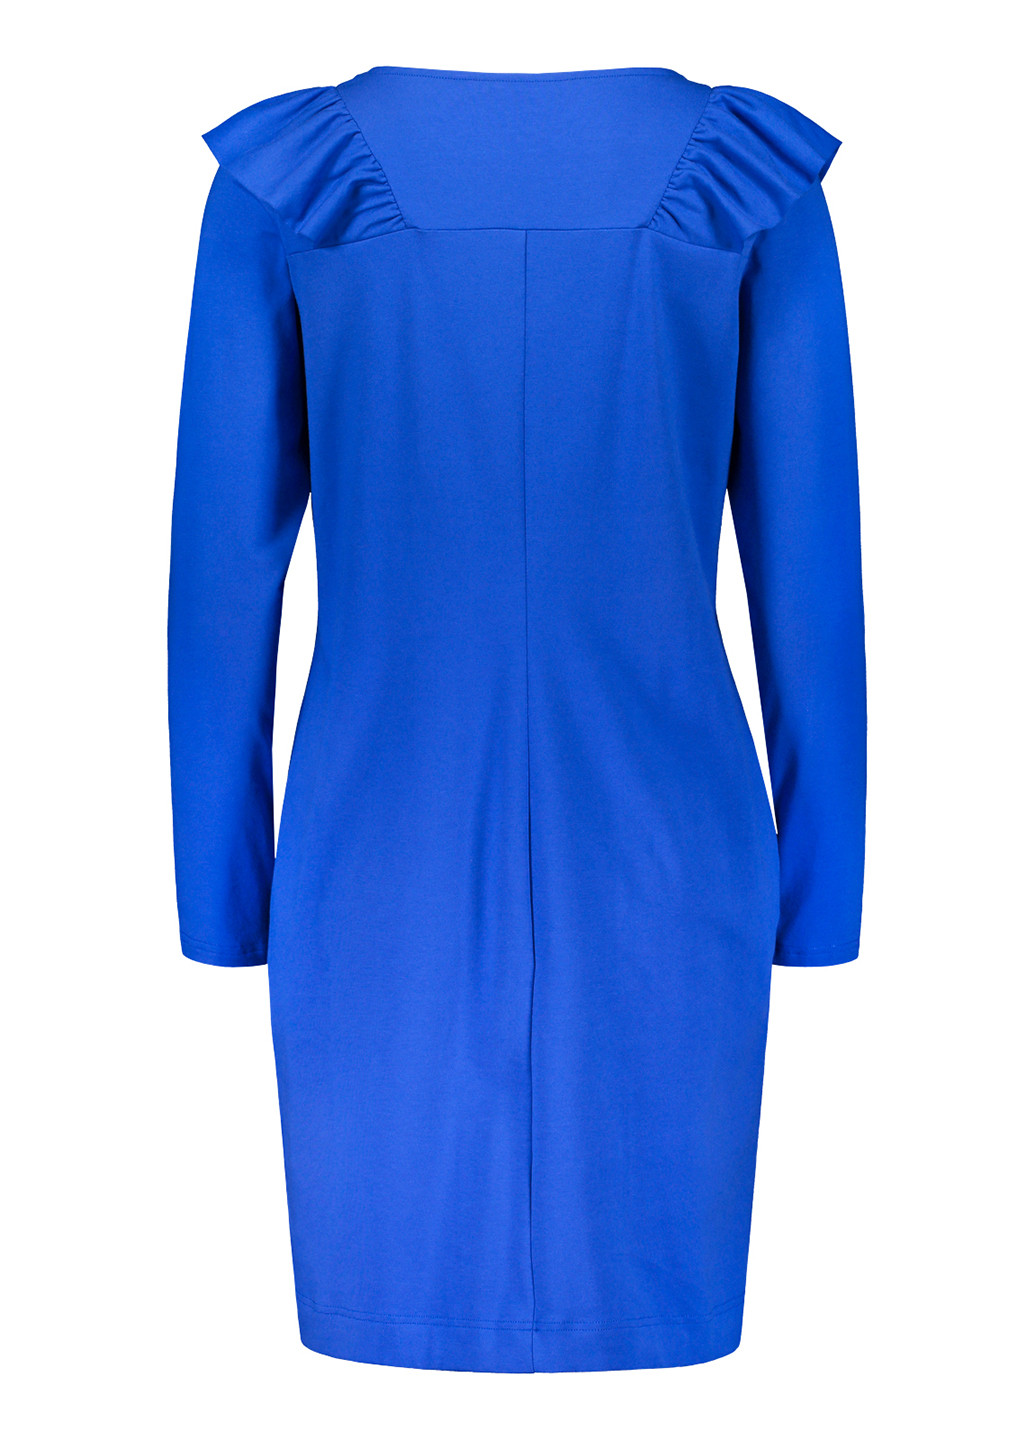 Синее кэжуал платье футляр NOSH однотонное